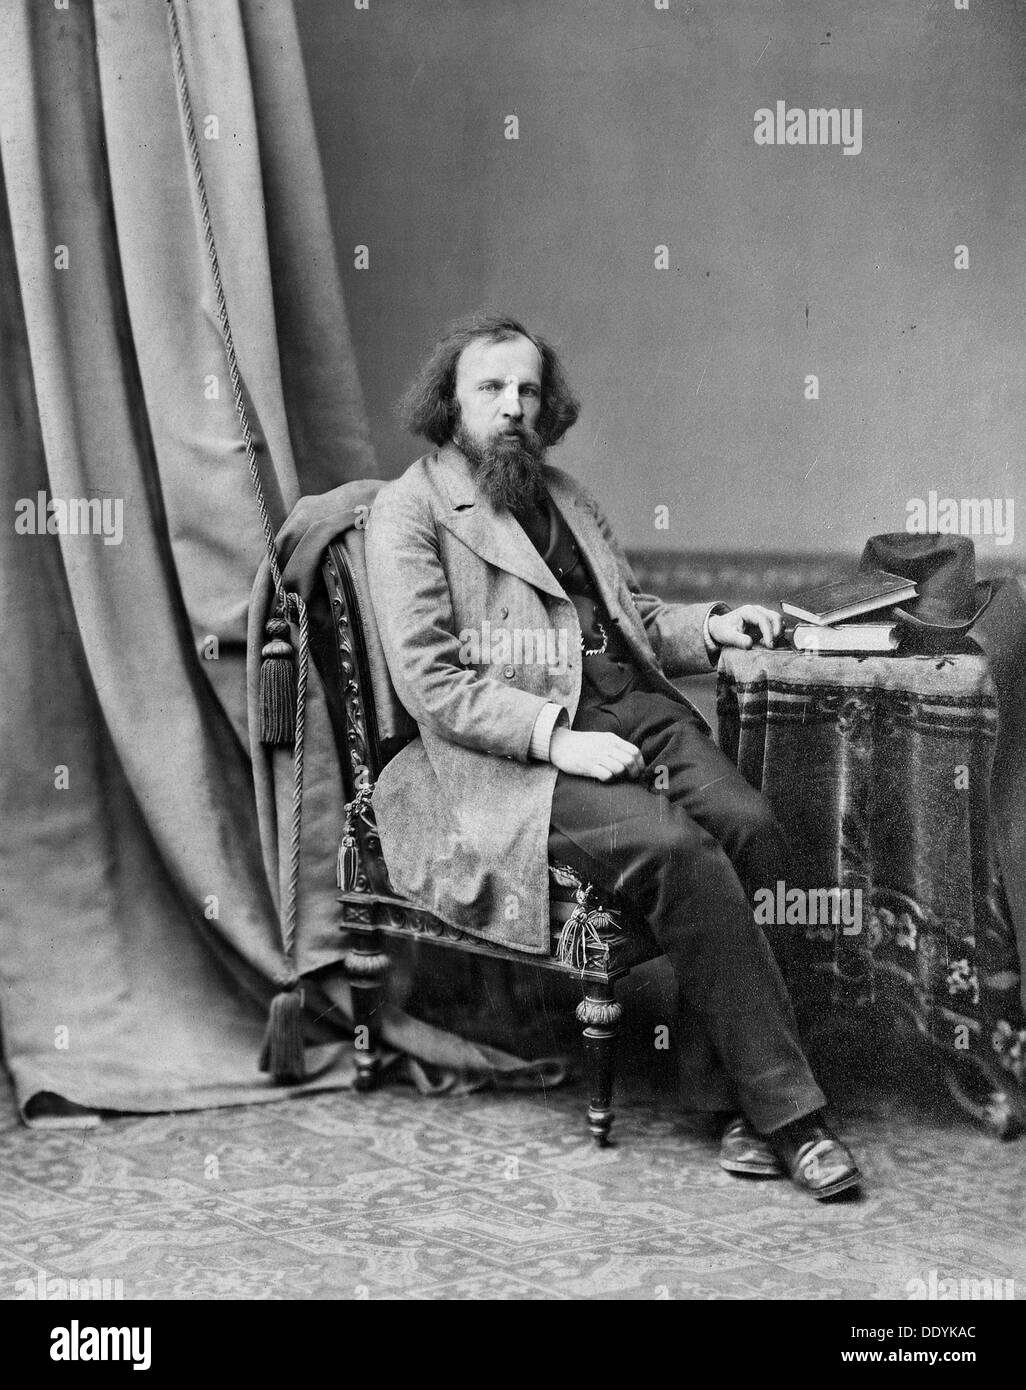 Dmitri Mendeleev, Russian chemist, c1880-c1882.  Artist: Andrei Osipovich Karelin Stock Photo